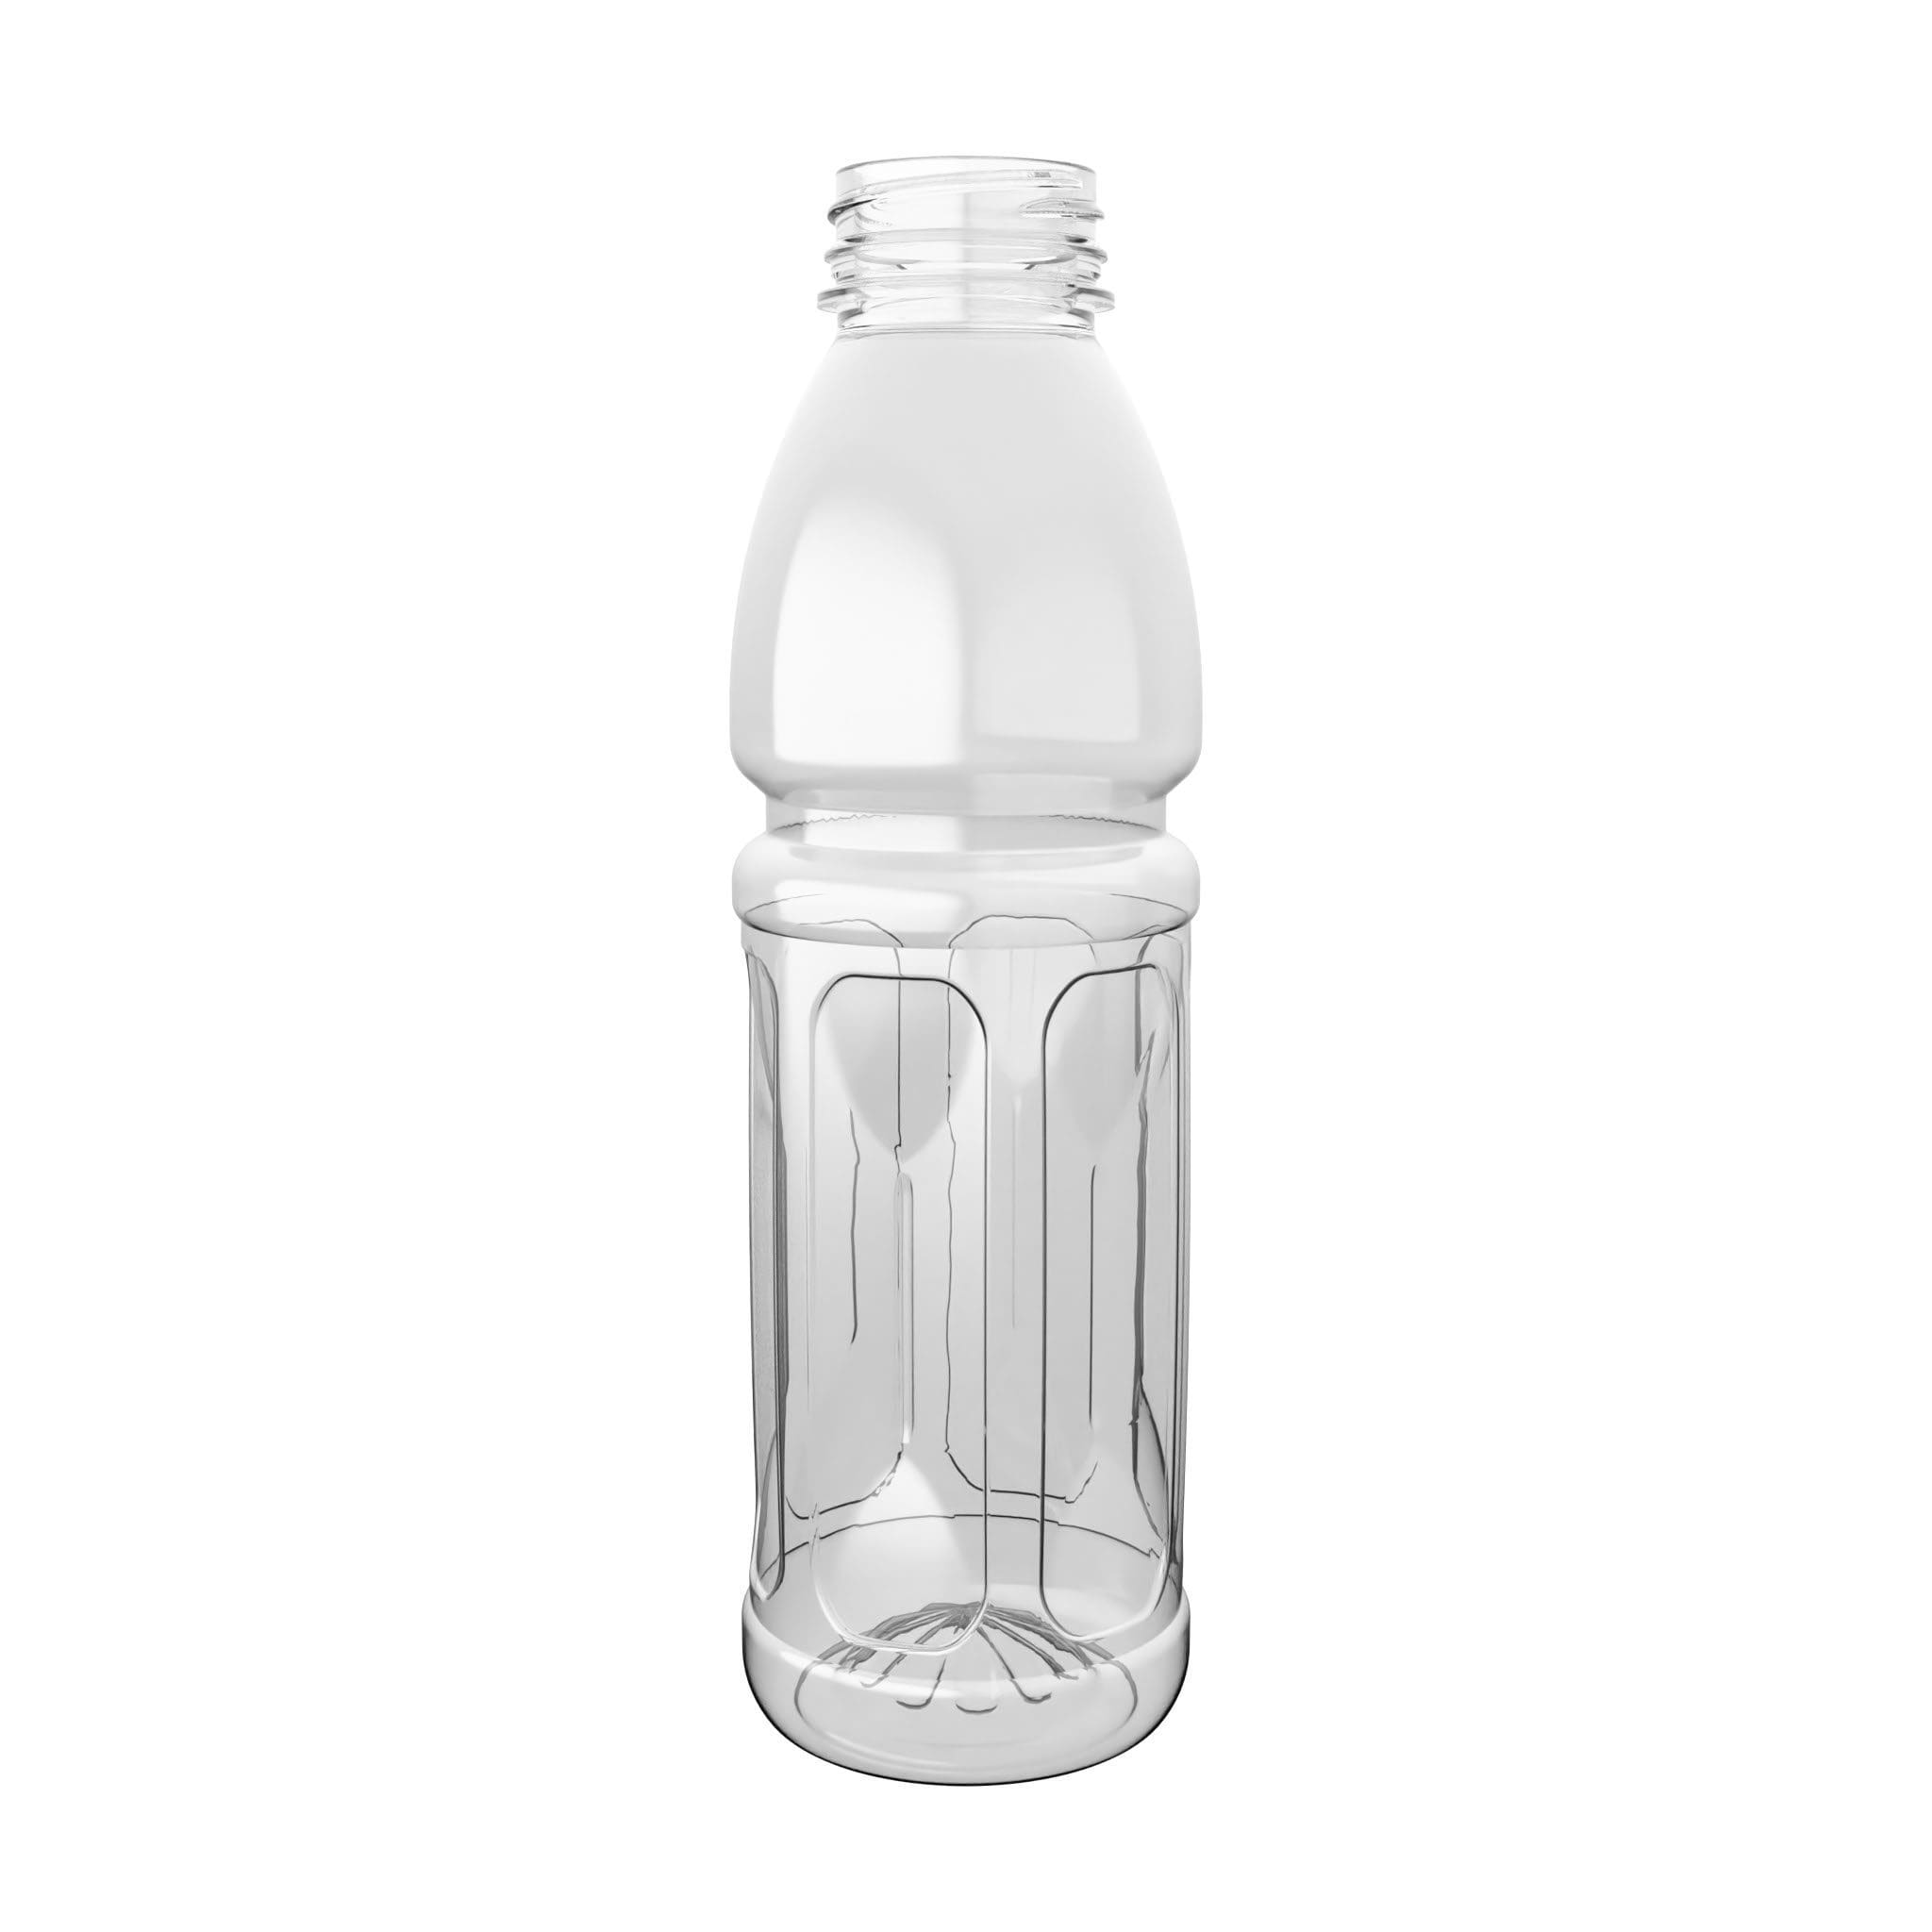 PET-Flasche PANEL-A hotfill zur Heißabfüllung.